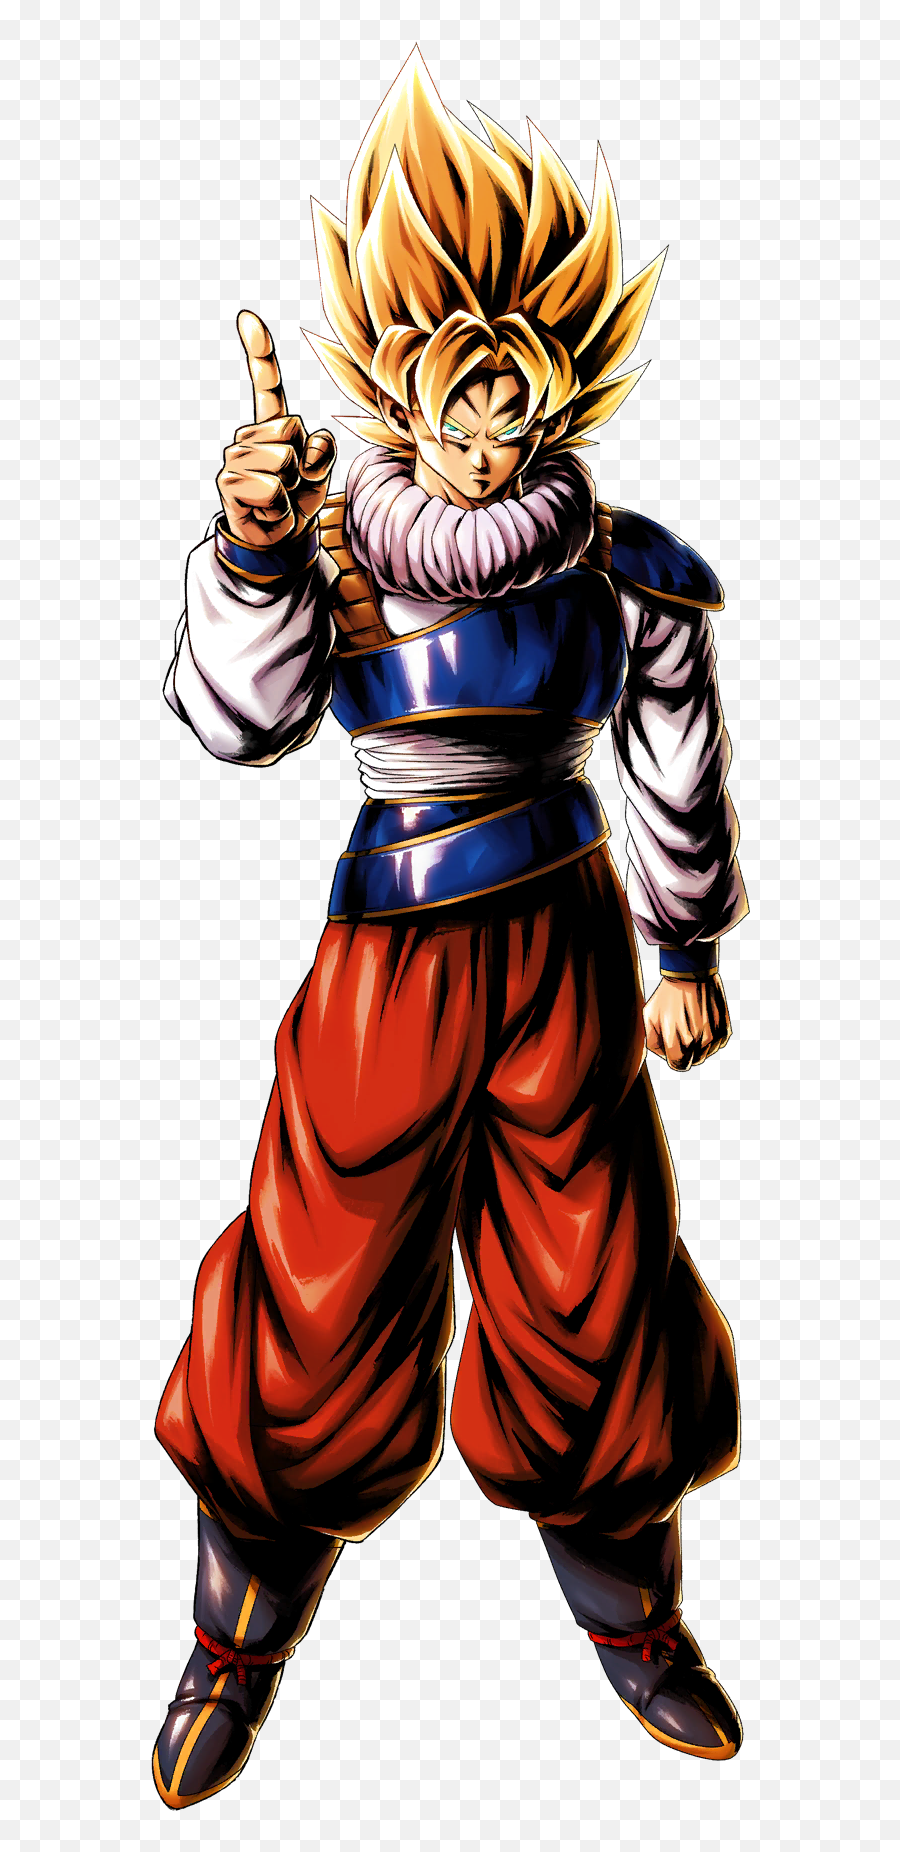 Yardrat Super Saiyan Goku Art - Yardrat Super Saiyan Goku Png,Super Saiyan Goku Png